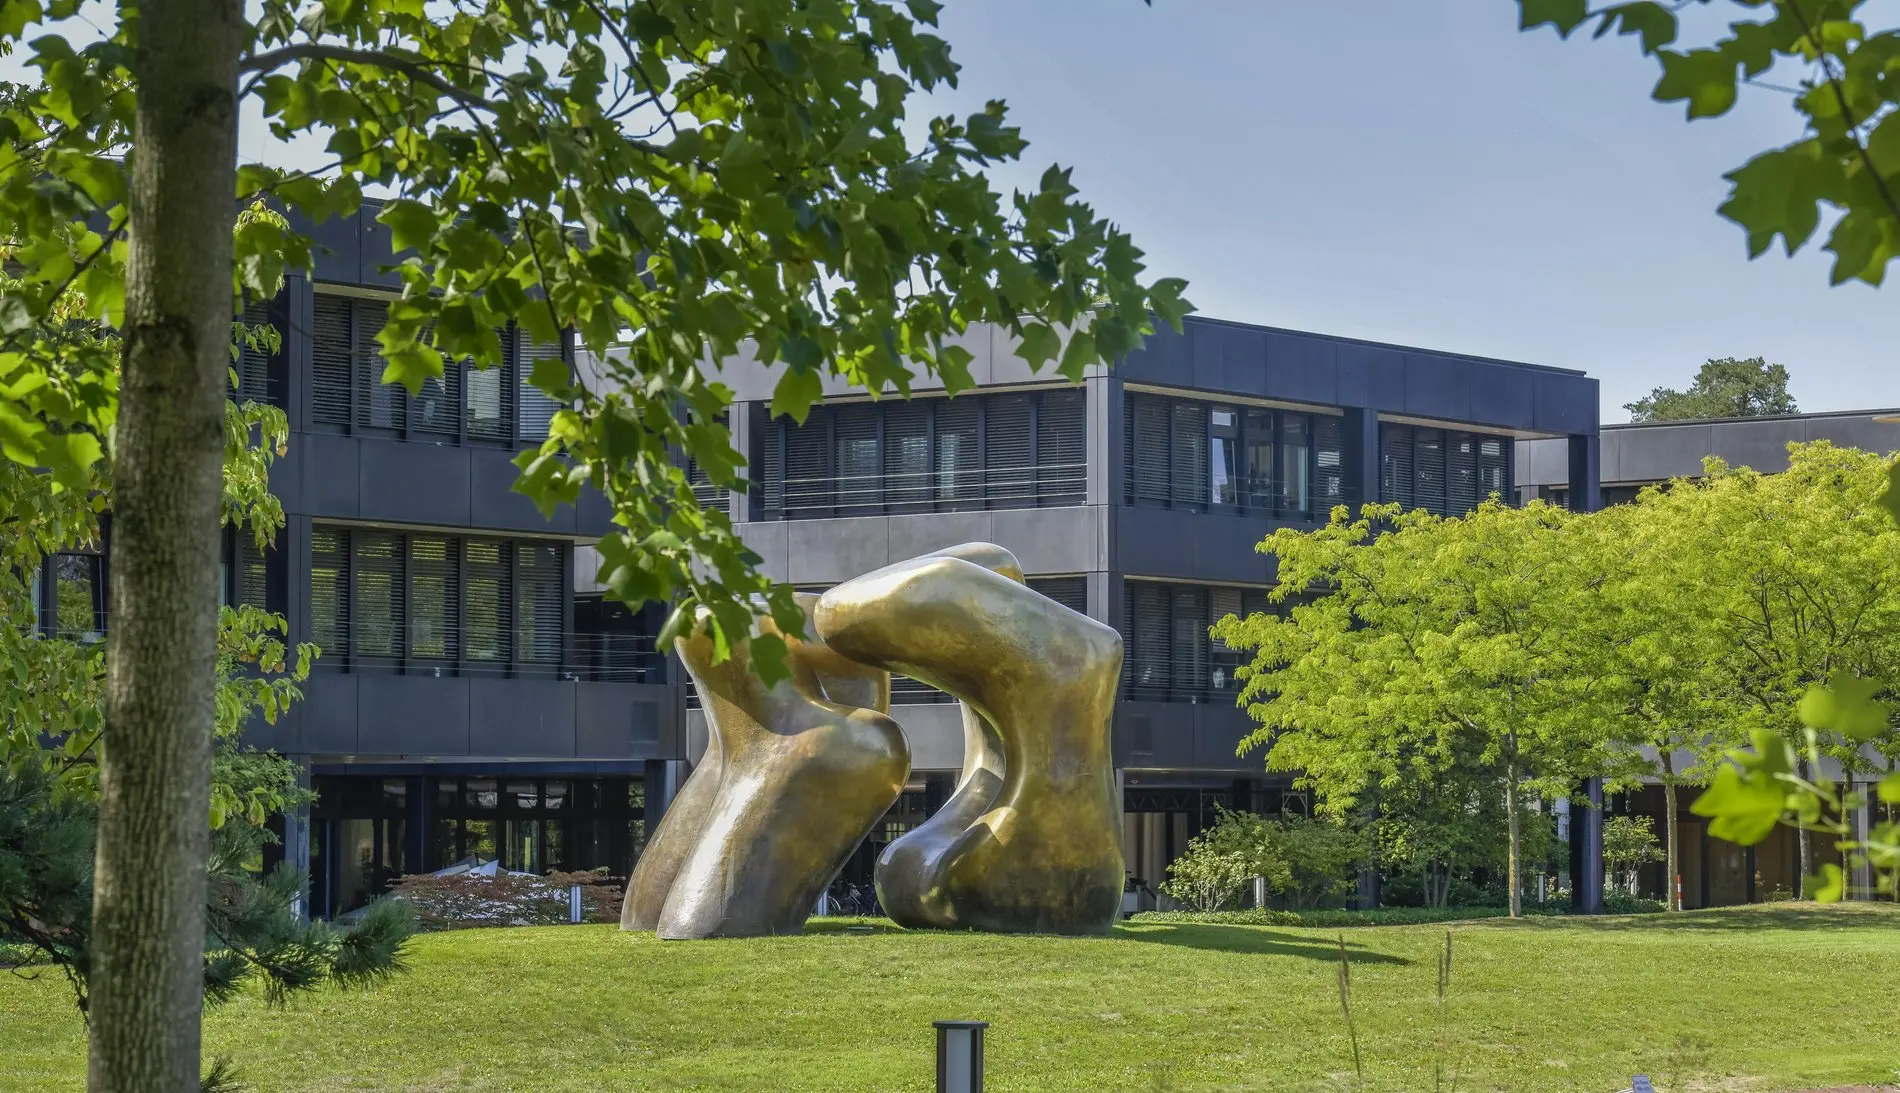 Skulptur von Henry Moore "Large Two Forms" vor dem Gebäude.